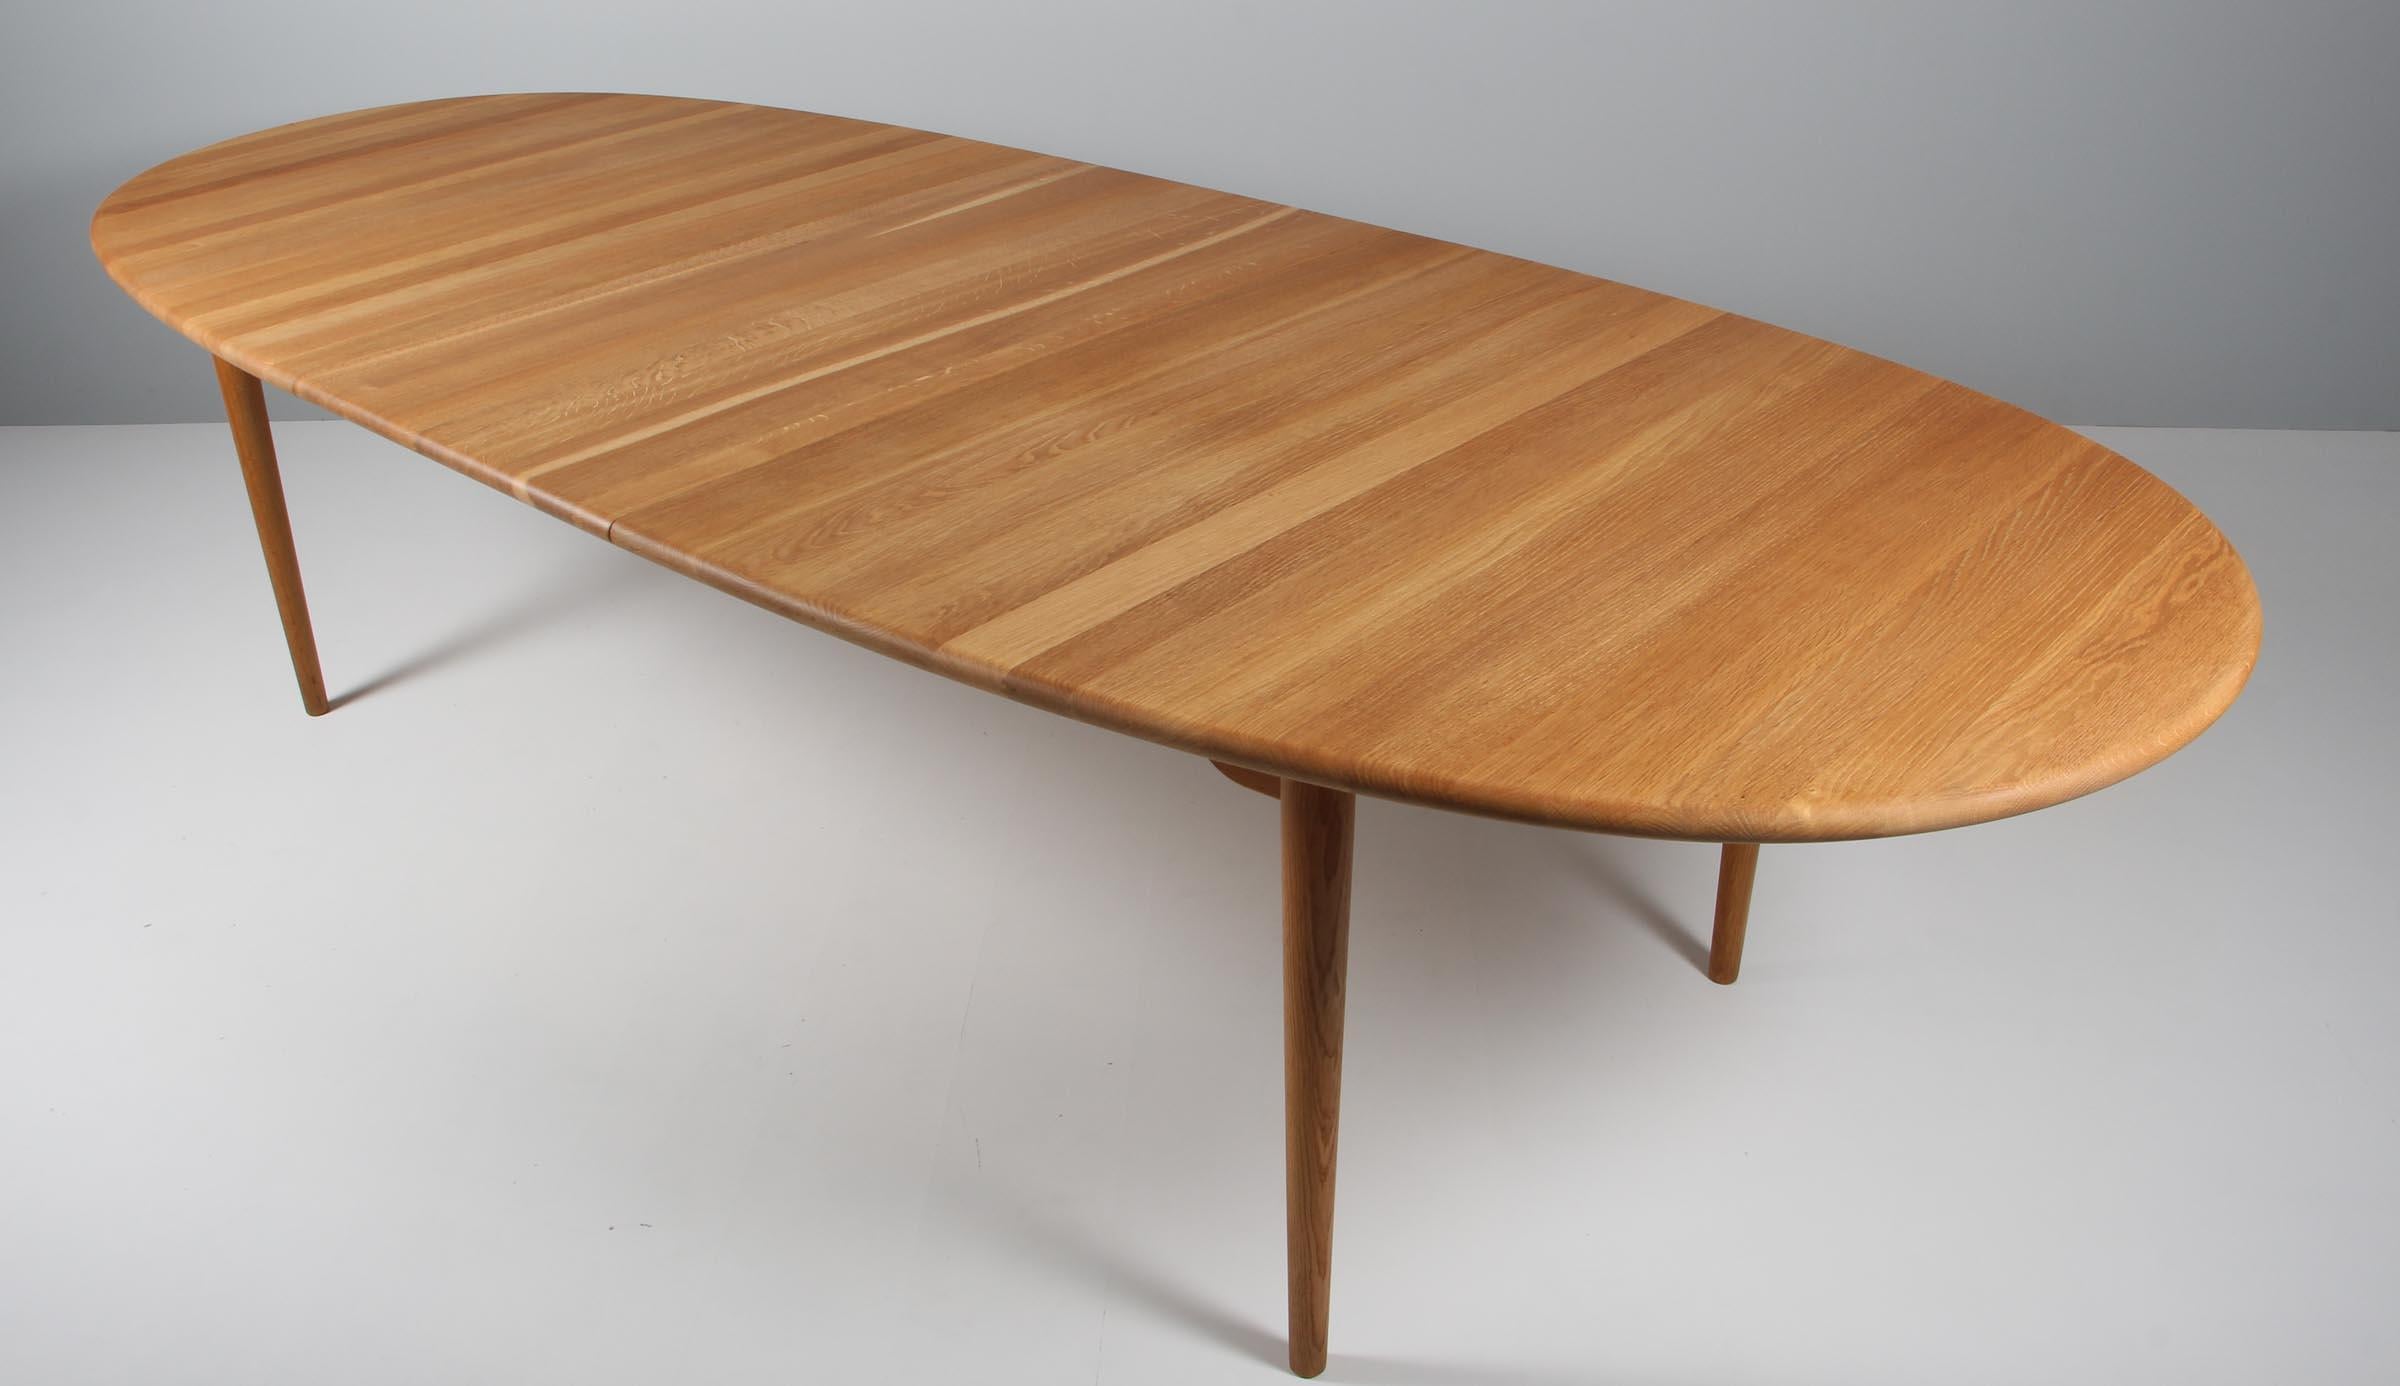 Contemporary Hans J. Wegner Dining Table, Model CH339 Oiled Oak, Carl Hansen, Denmark